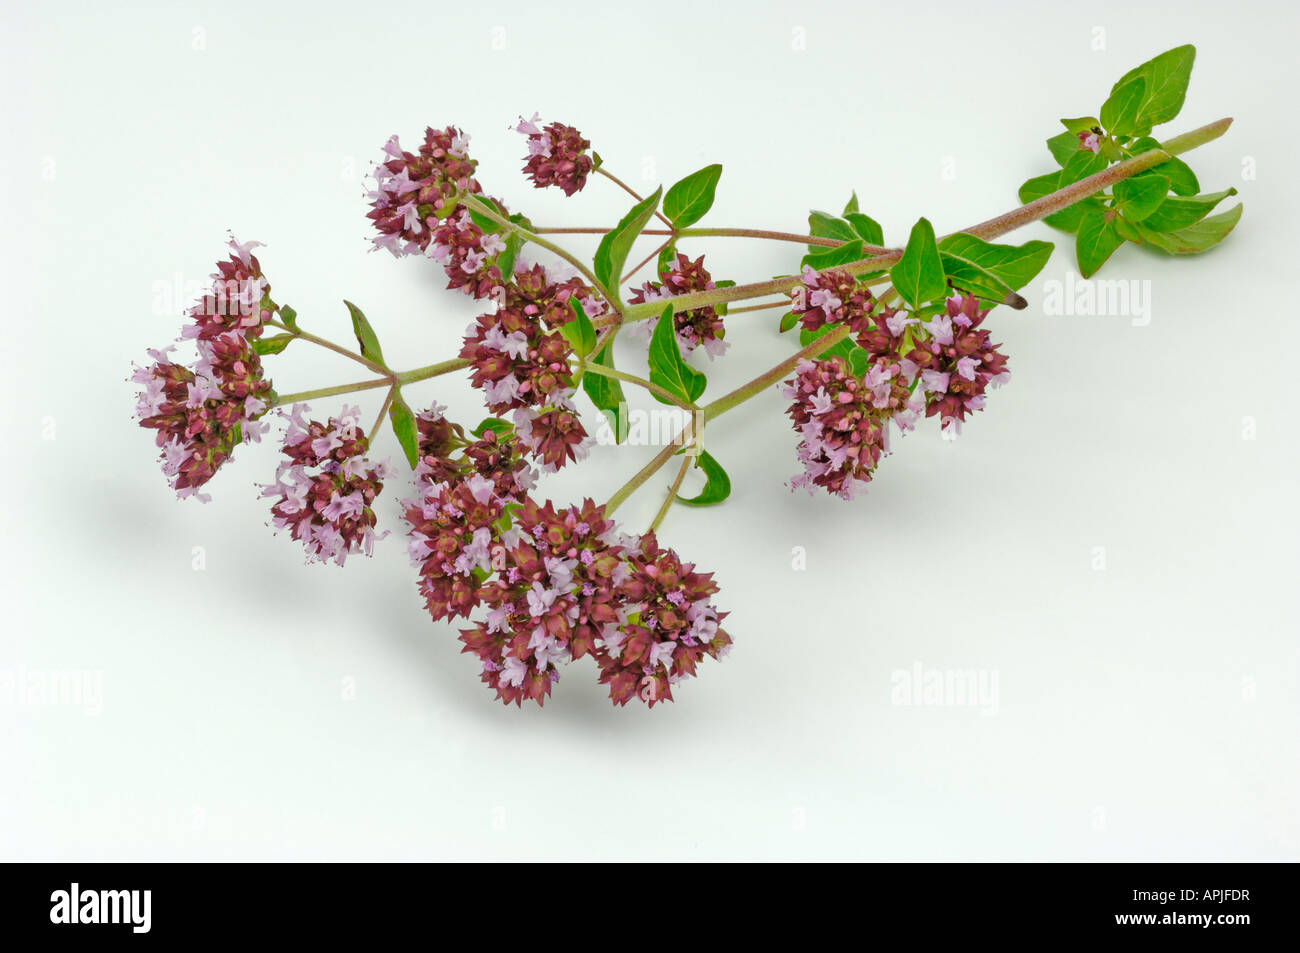 Oregano, Wild Majoram (Origanum vulgare), flowering twig; studio picture Stock Photo